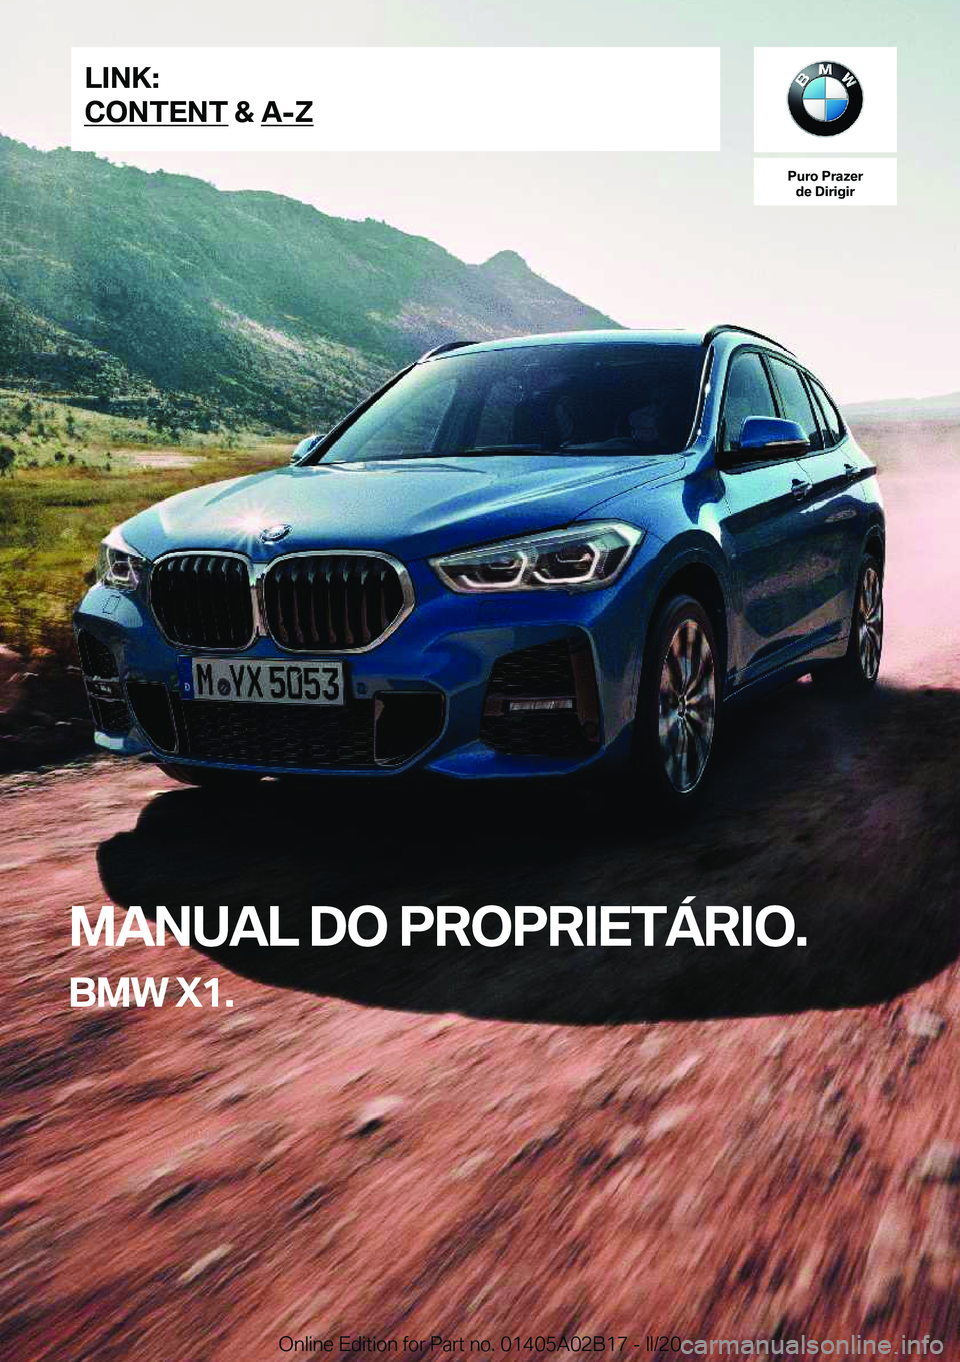 BMW X1 2020  Manual do condutor (in Portuguese) �P�u�r�o��P�r�a�z�e�r�d�e��D�i�r�i�g�i�r
�M�A�N�U�A�L��D�O��P�R�O�P�R�I�E�T�Á�R�I�O�.
�B�M�W��X�1�.�L�I�N�K�:
�C�O�N�T�E�N�T��&��A�-�Z�O�n�l�i�n�e��E�d�i�t�i�o�n��f�o�r��P�a�r�t��n�o�.��0